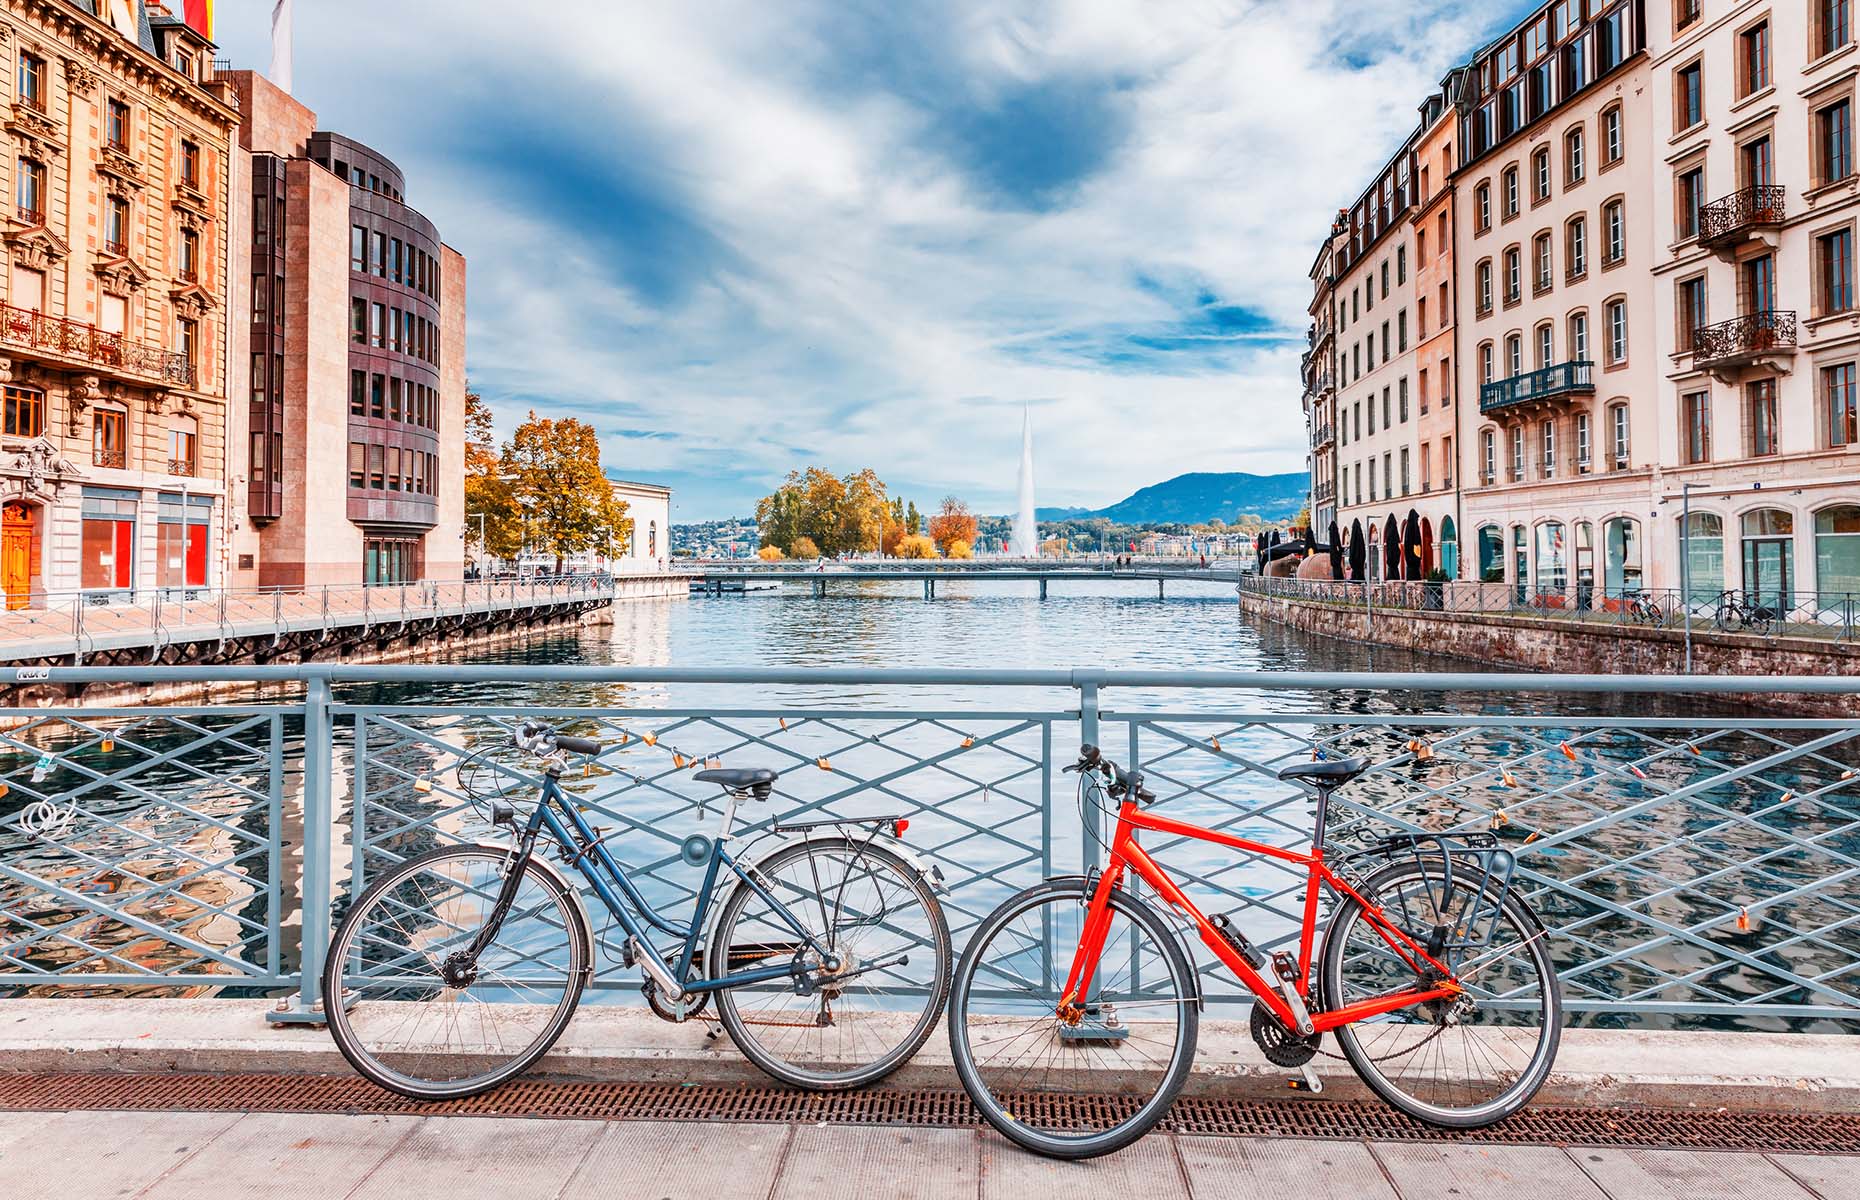 Geneva cityscape (Image: Feel good studio/Shutterstock)